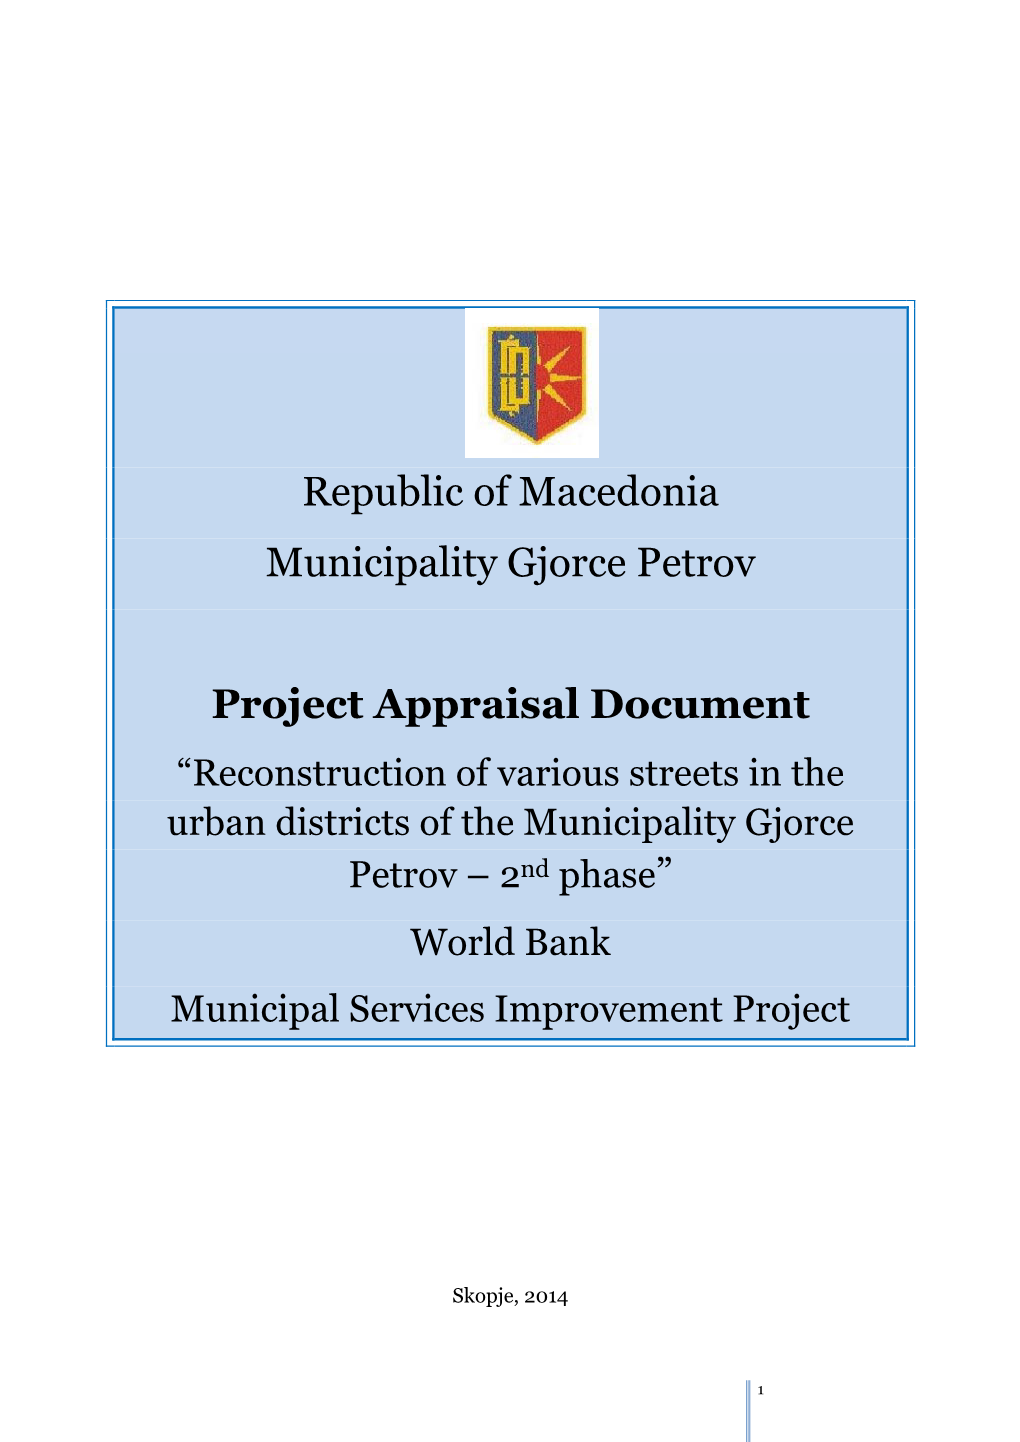 Republic of Macedonia Municipality Gjorce Petrov Project Appraisal